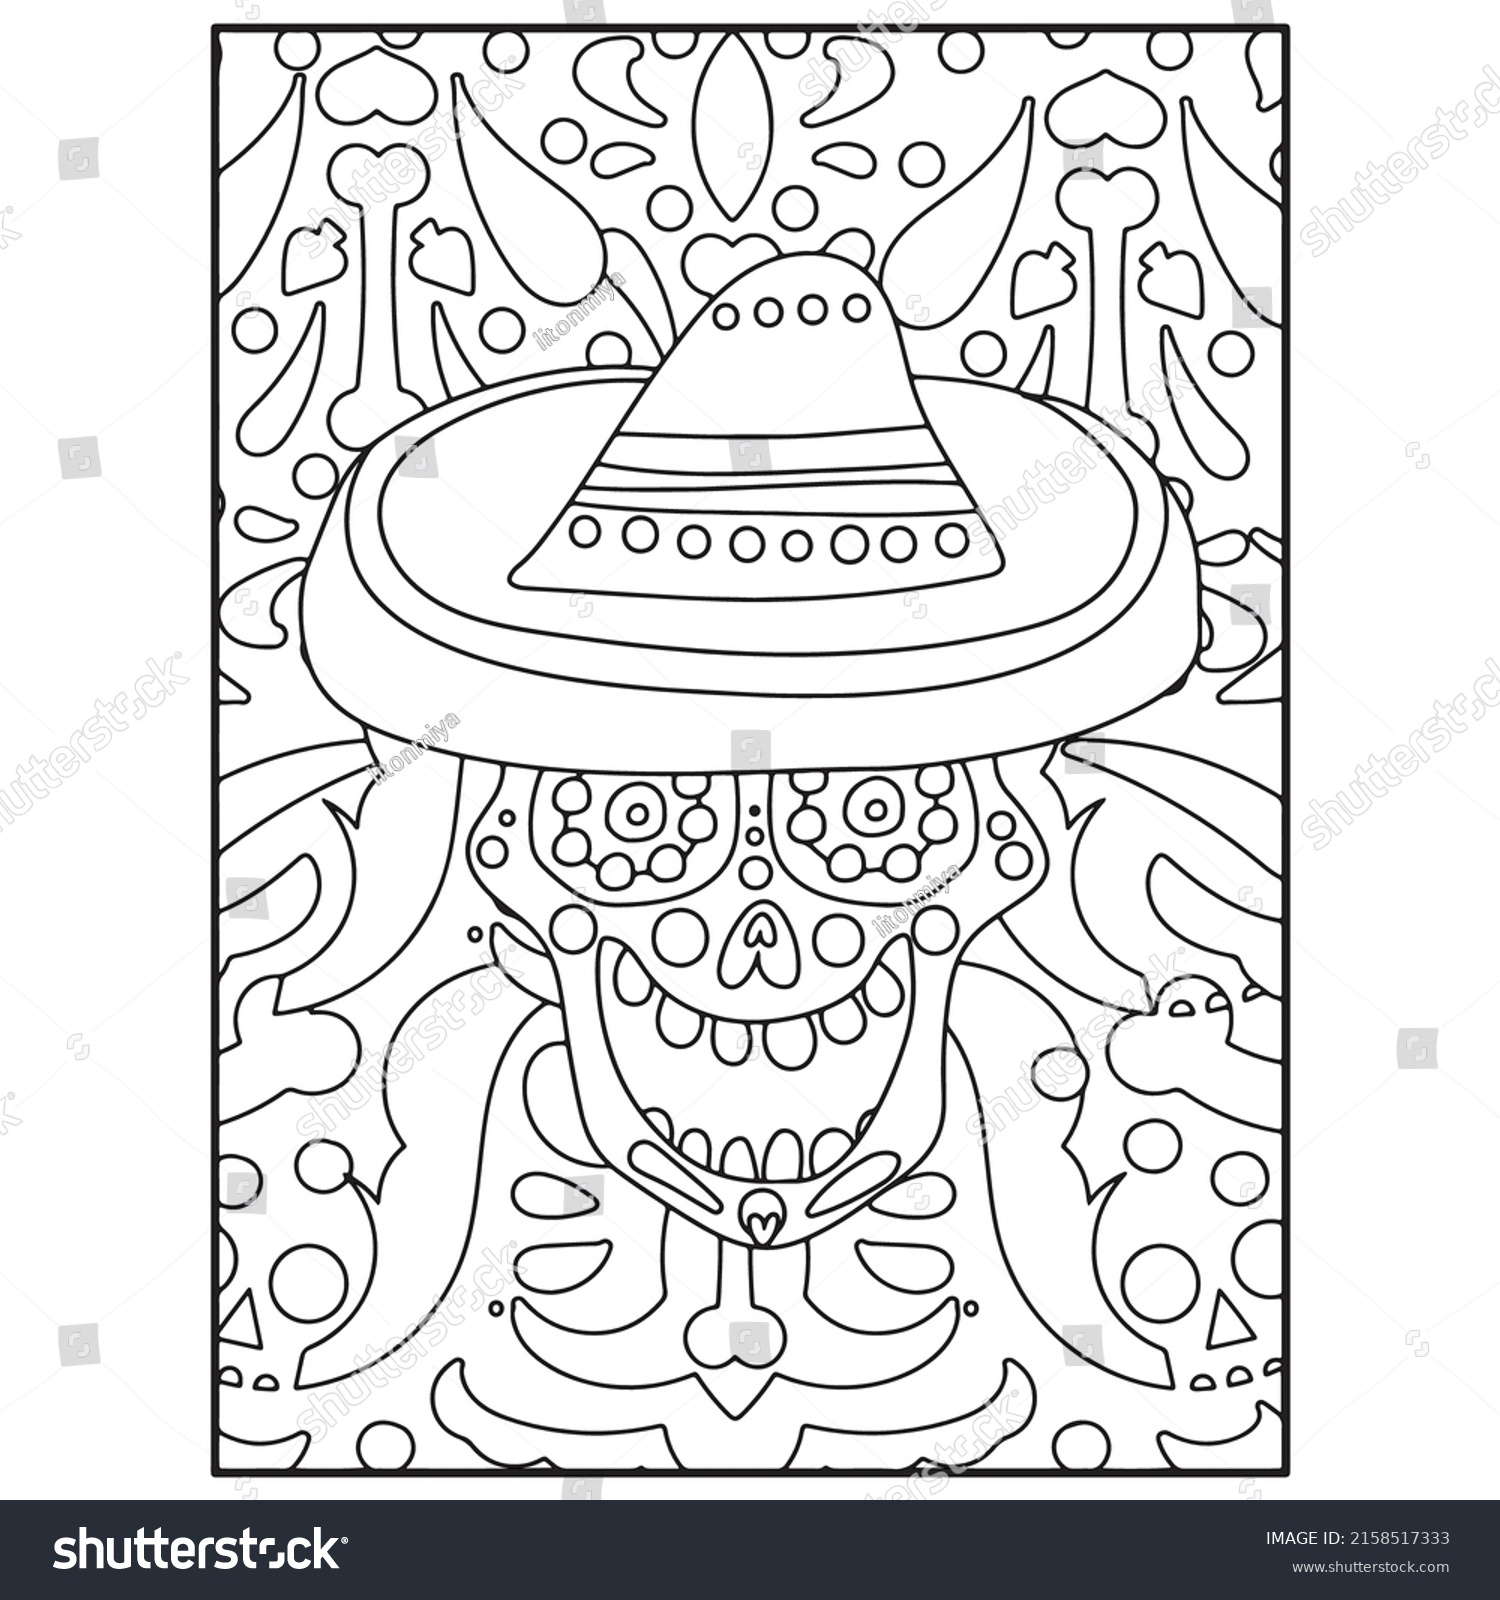 SVG of Sugar Skull Adult Coloring Pages For Kdp svg